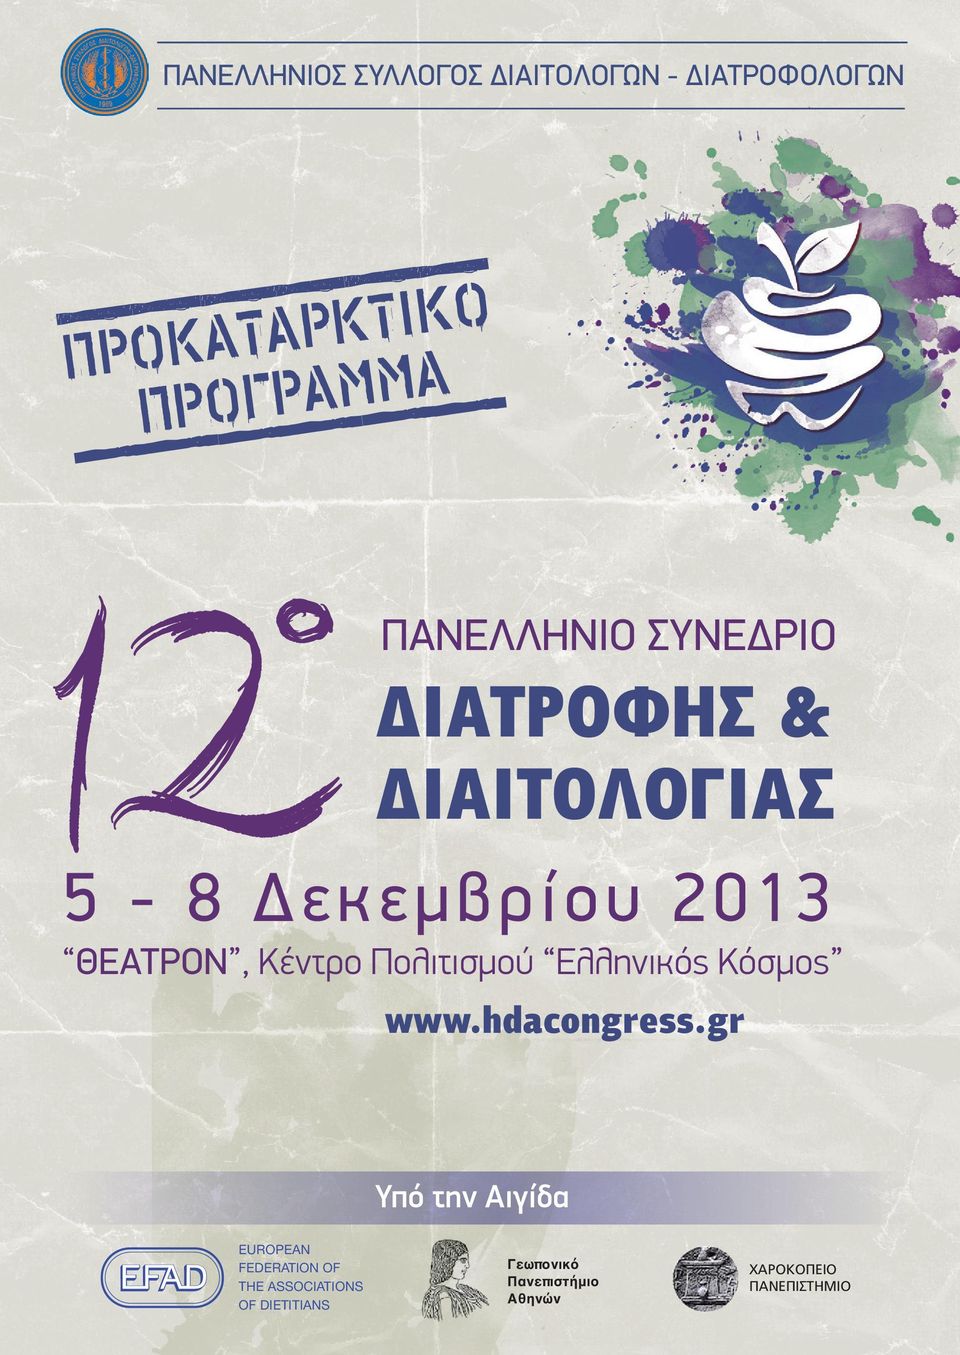 Πολιτισµού Ελληνικός Κόσµος www.hdacongress.